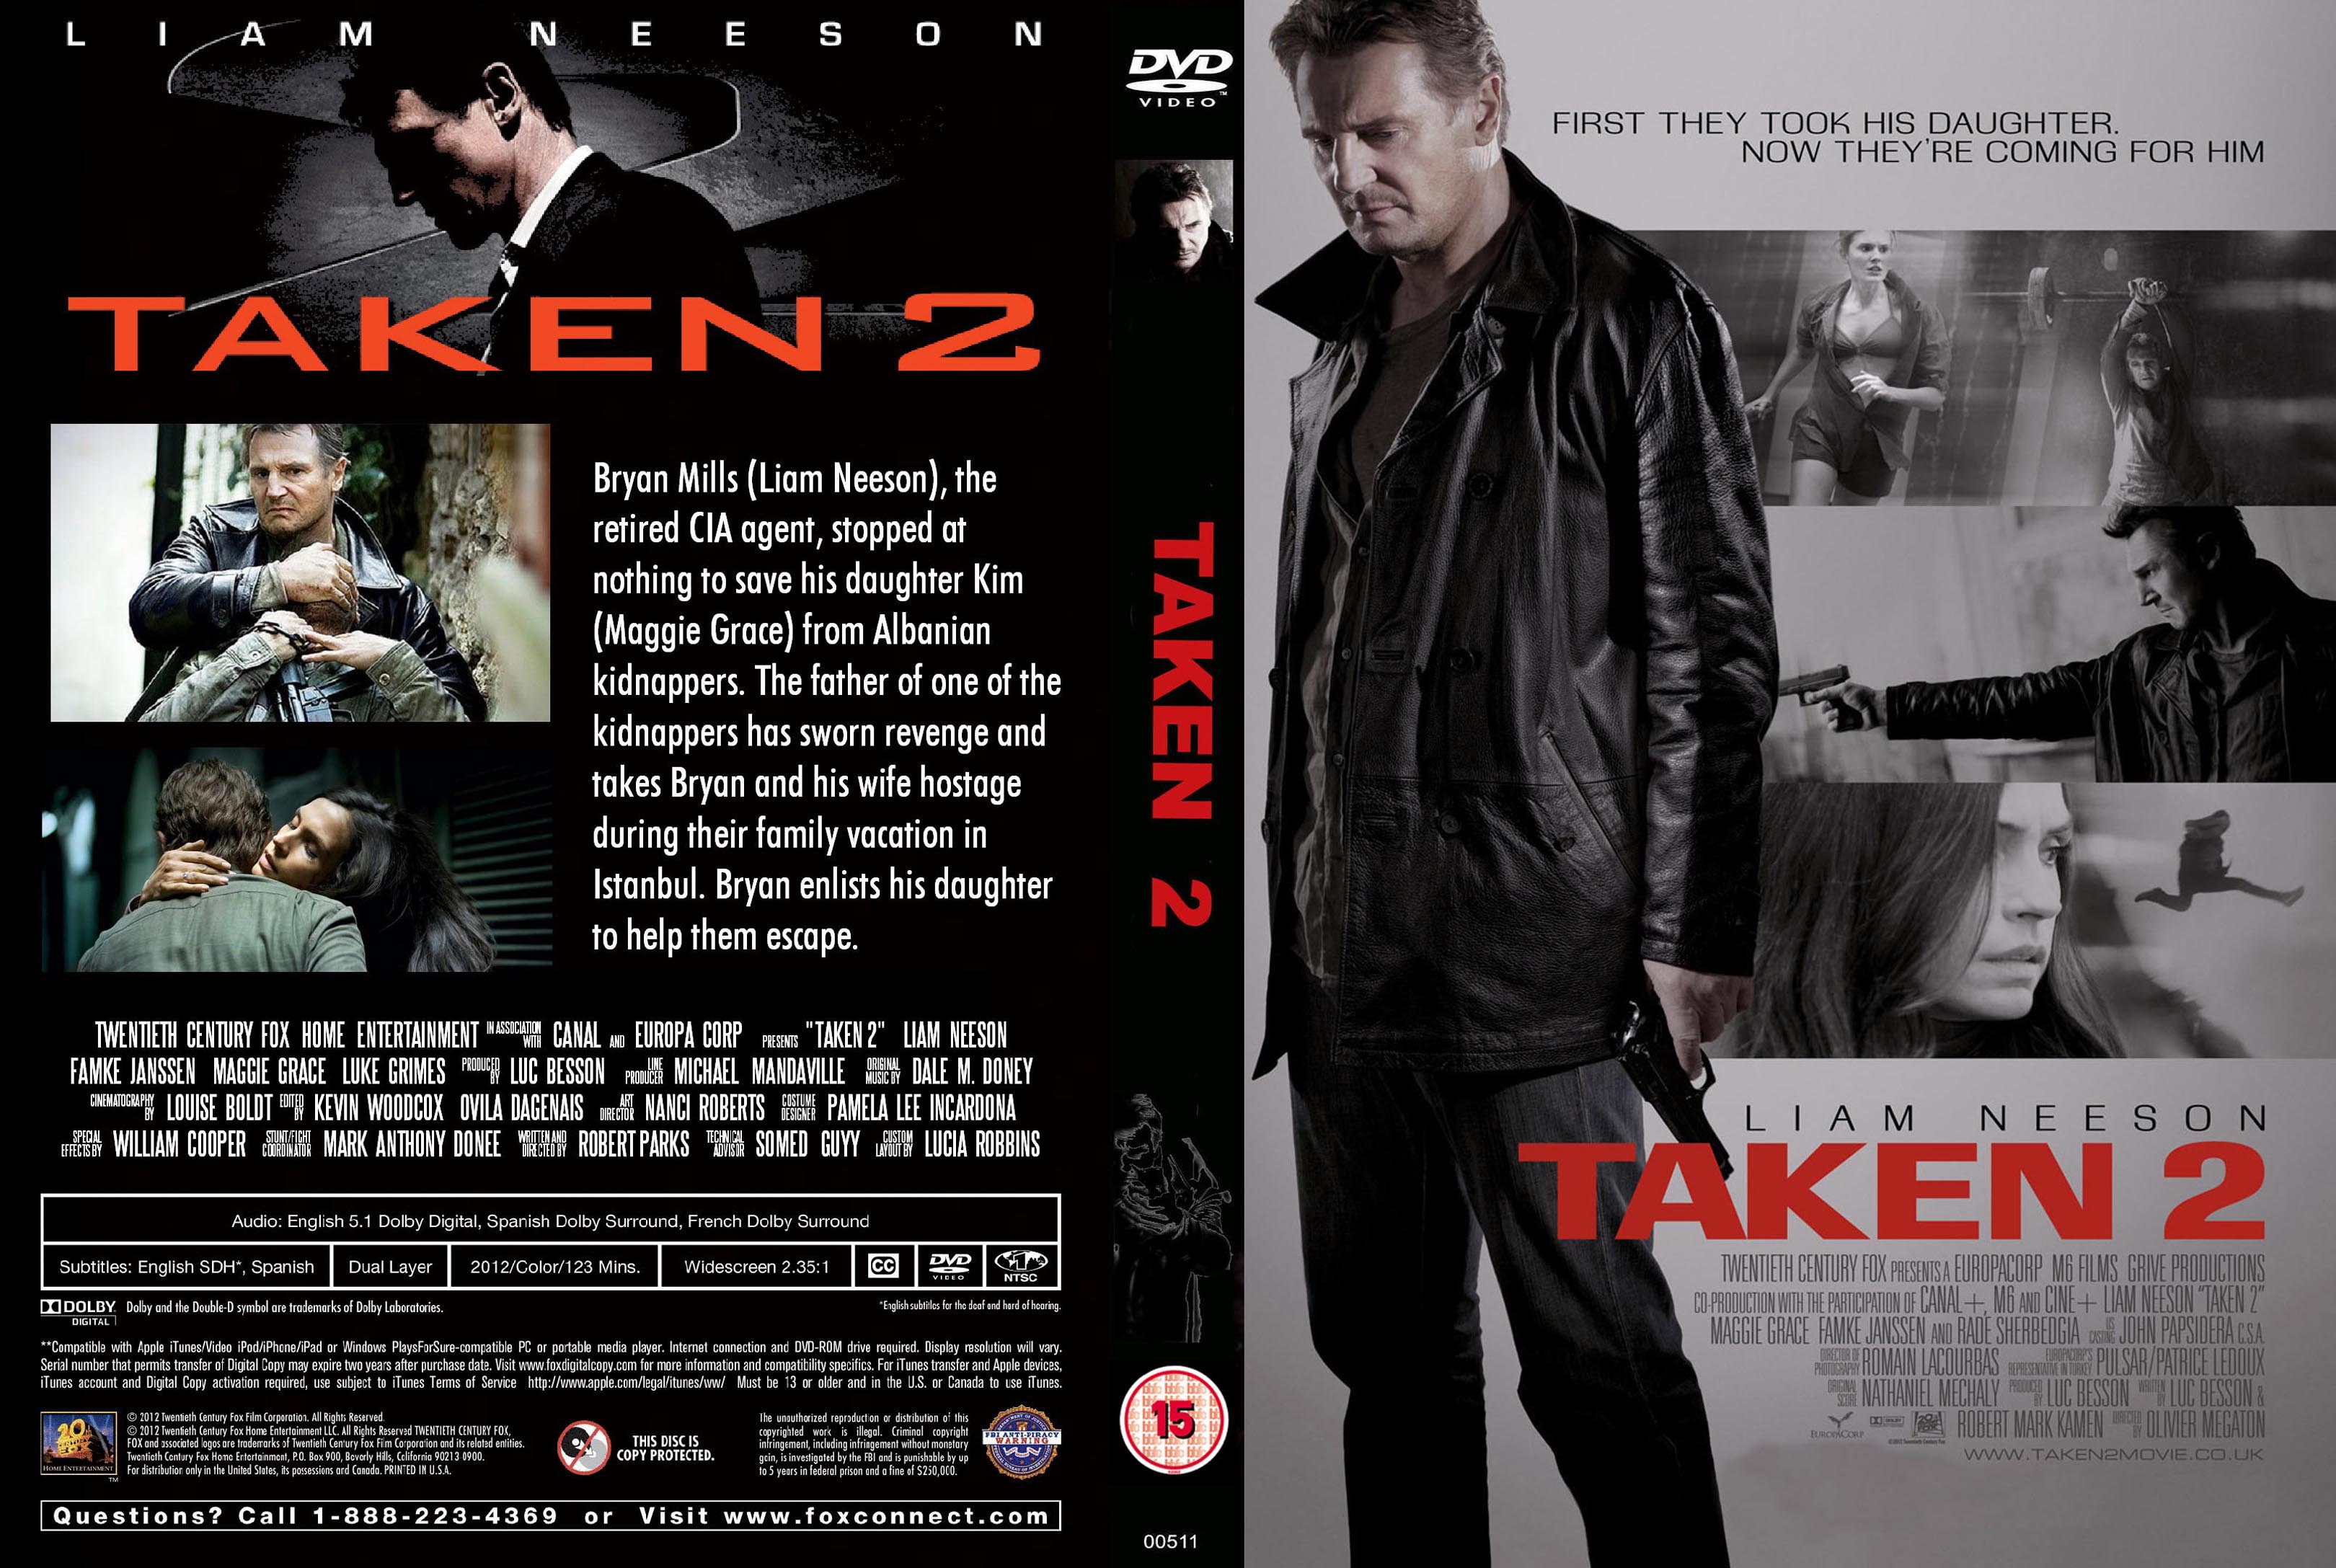 Taken 2 DVD Cover